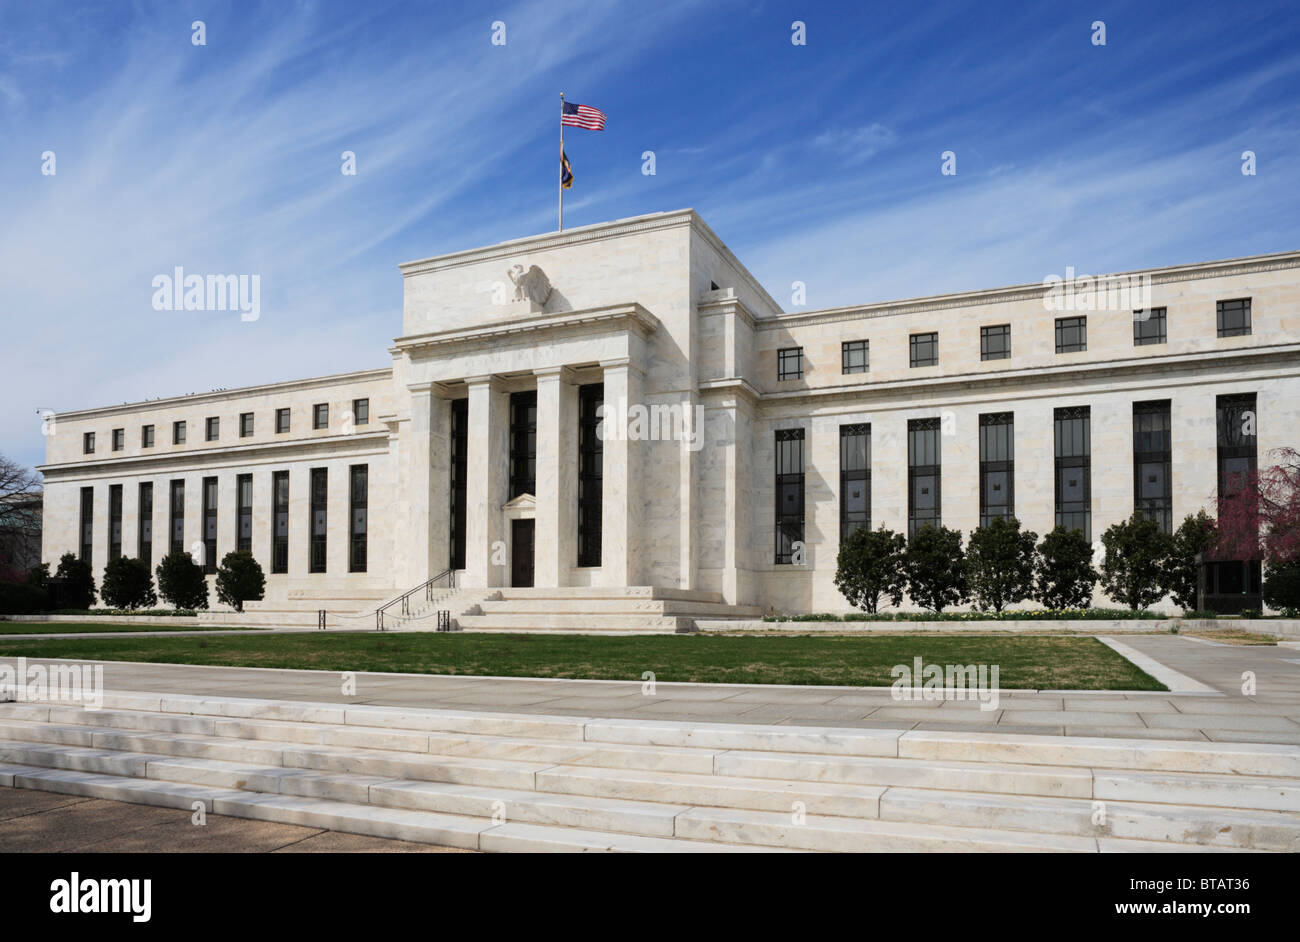 Le quartier général de la Réserve fédérale des Etats-Unis, Washington, DC. Banque D'Images